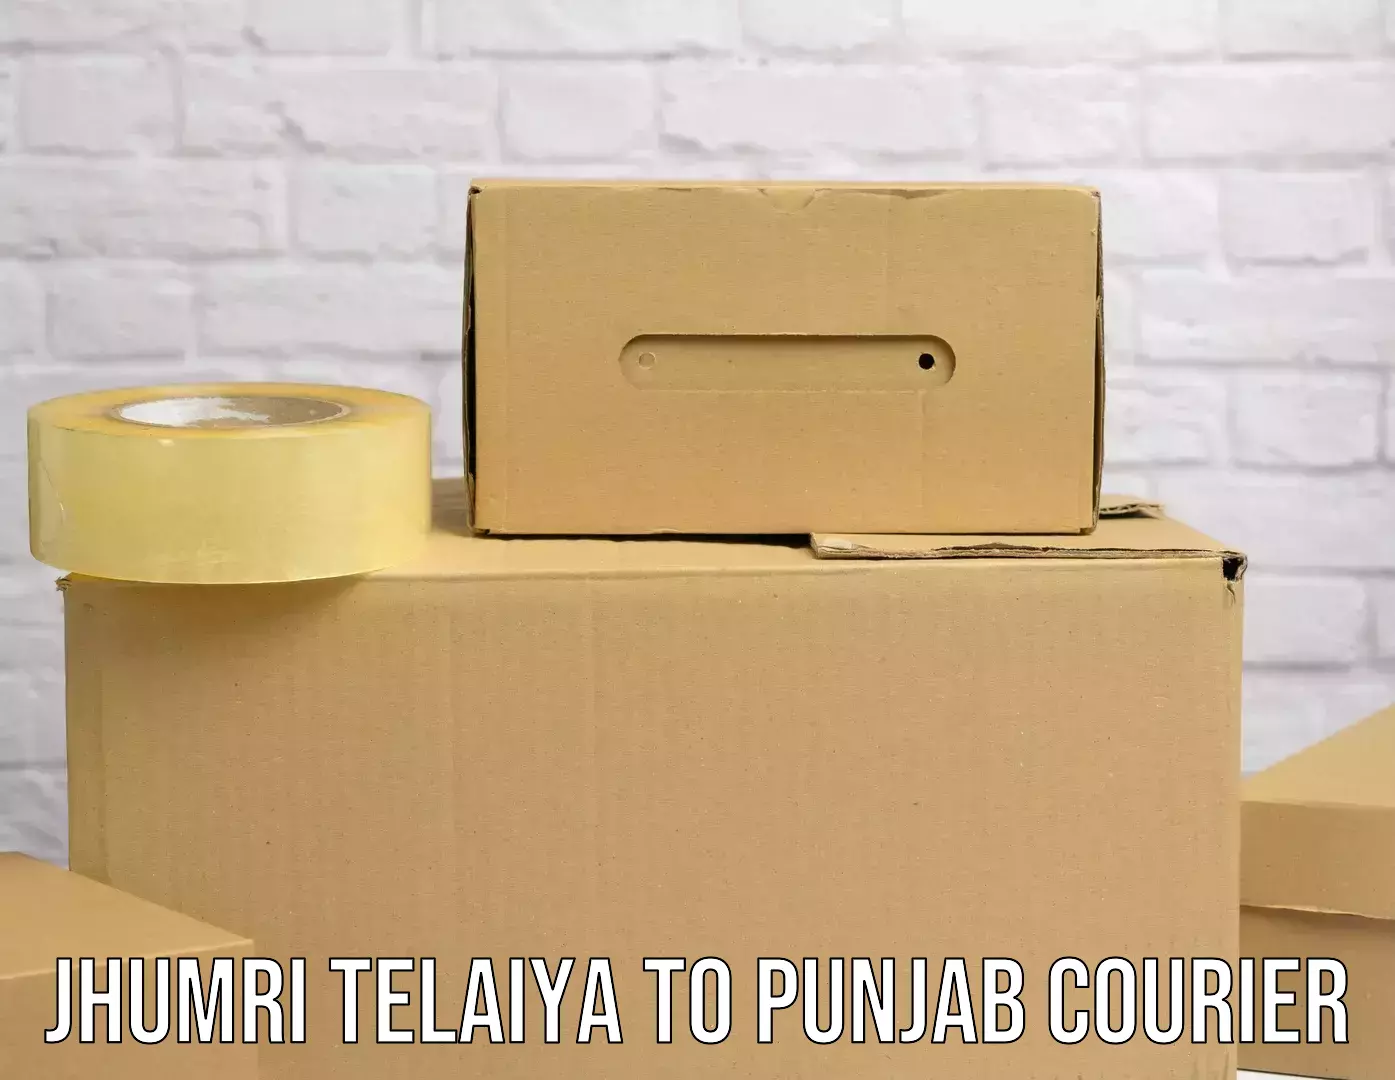 24/7 courier service in Jhumri Telaiya to Punjab